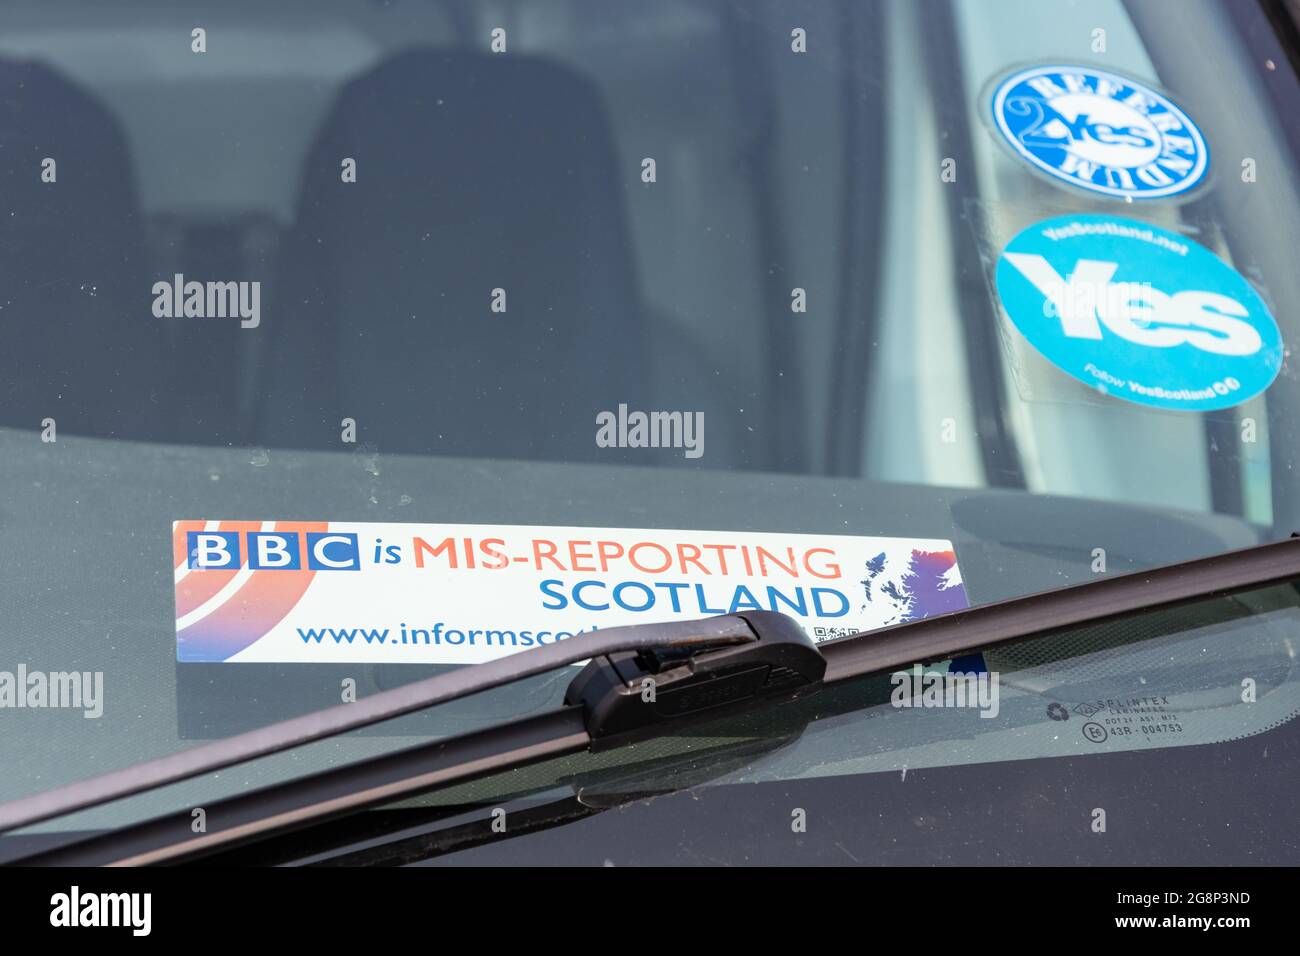 INFORM Scotland 'BBC is mis-reporting Scotland' sticker dans la campagne de véhicule contre BBC Scotland bias - Scotland, UK Banque D'Images